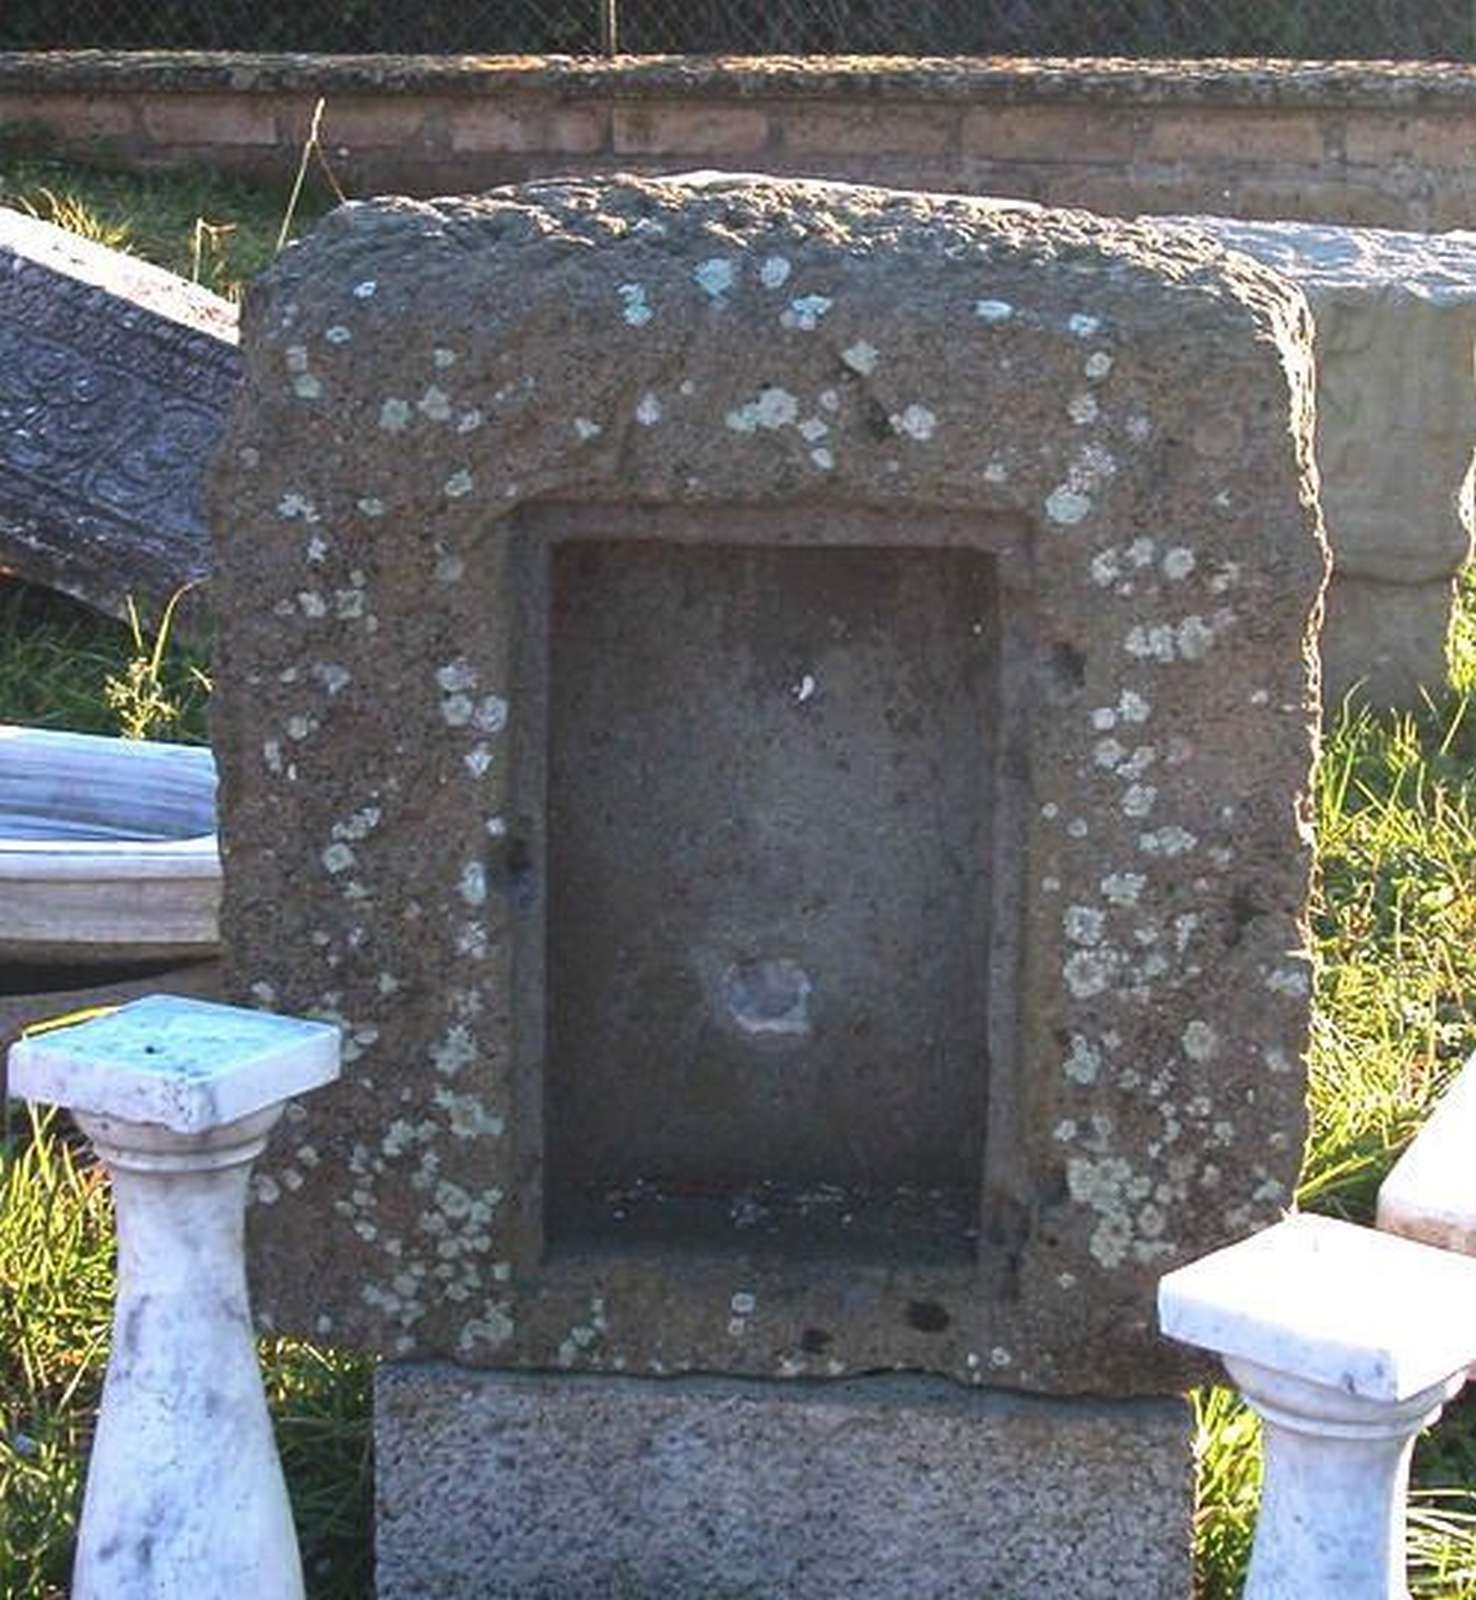 Antico tabernacolo in pietra. Epoca 1400. - Tabernacoli - Architettura - Prodotti - Antichità Fiorillo